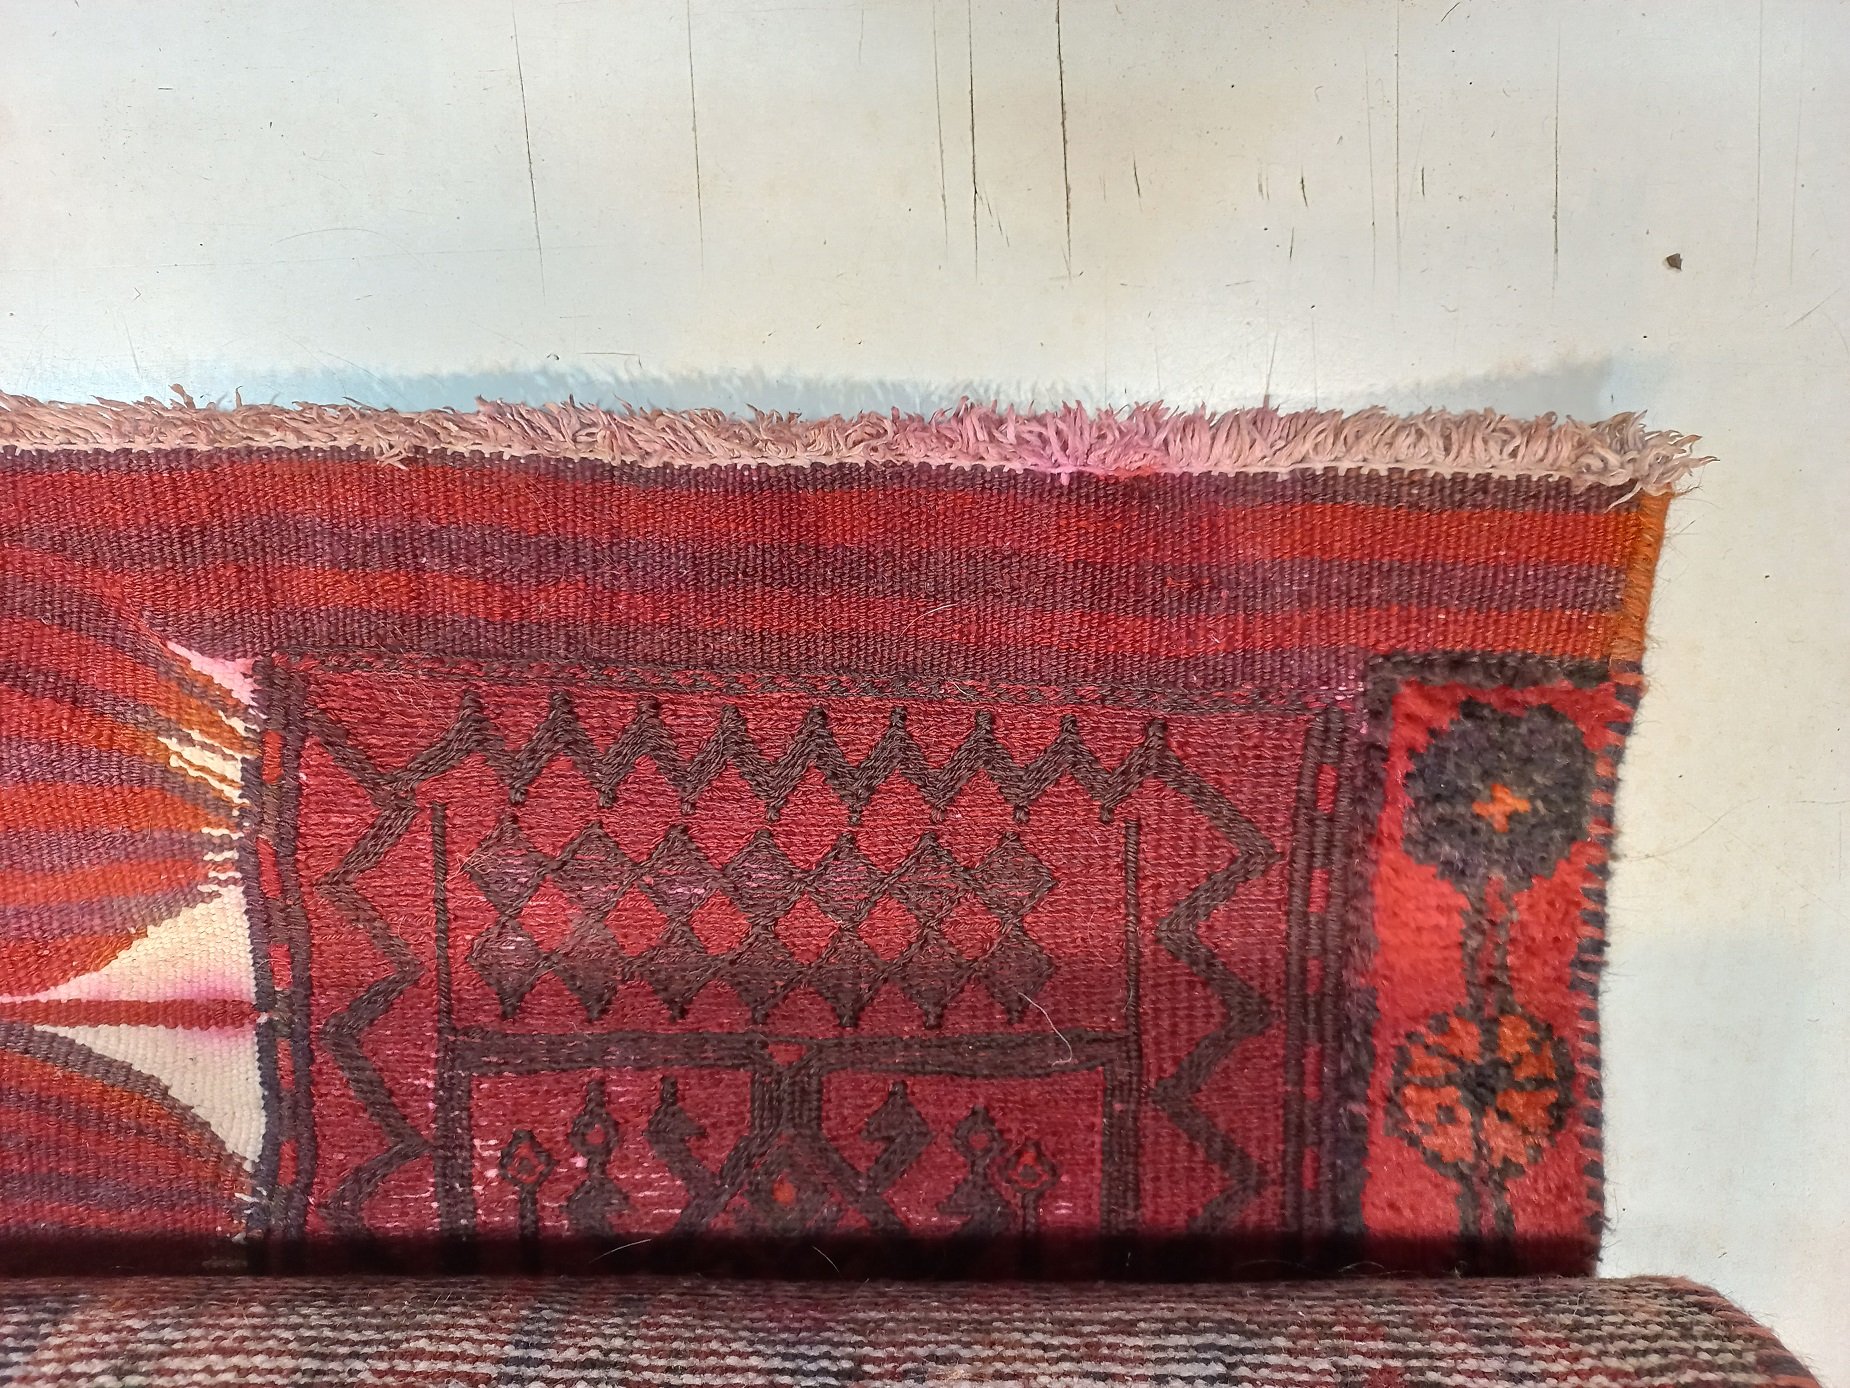 שטיח טורקי שניזוק מהצפת מים עם גלישות צבעים